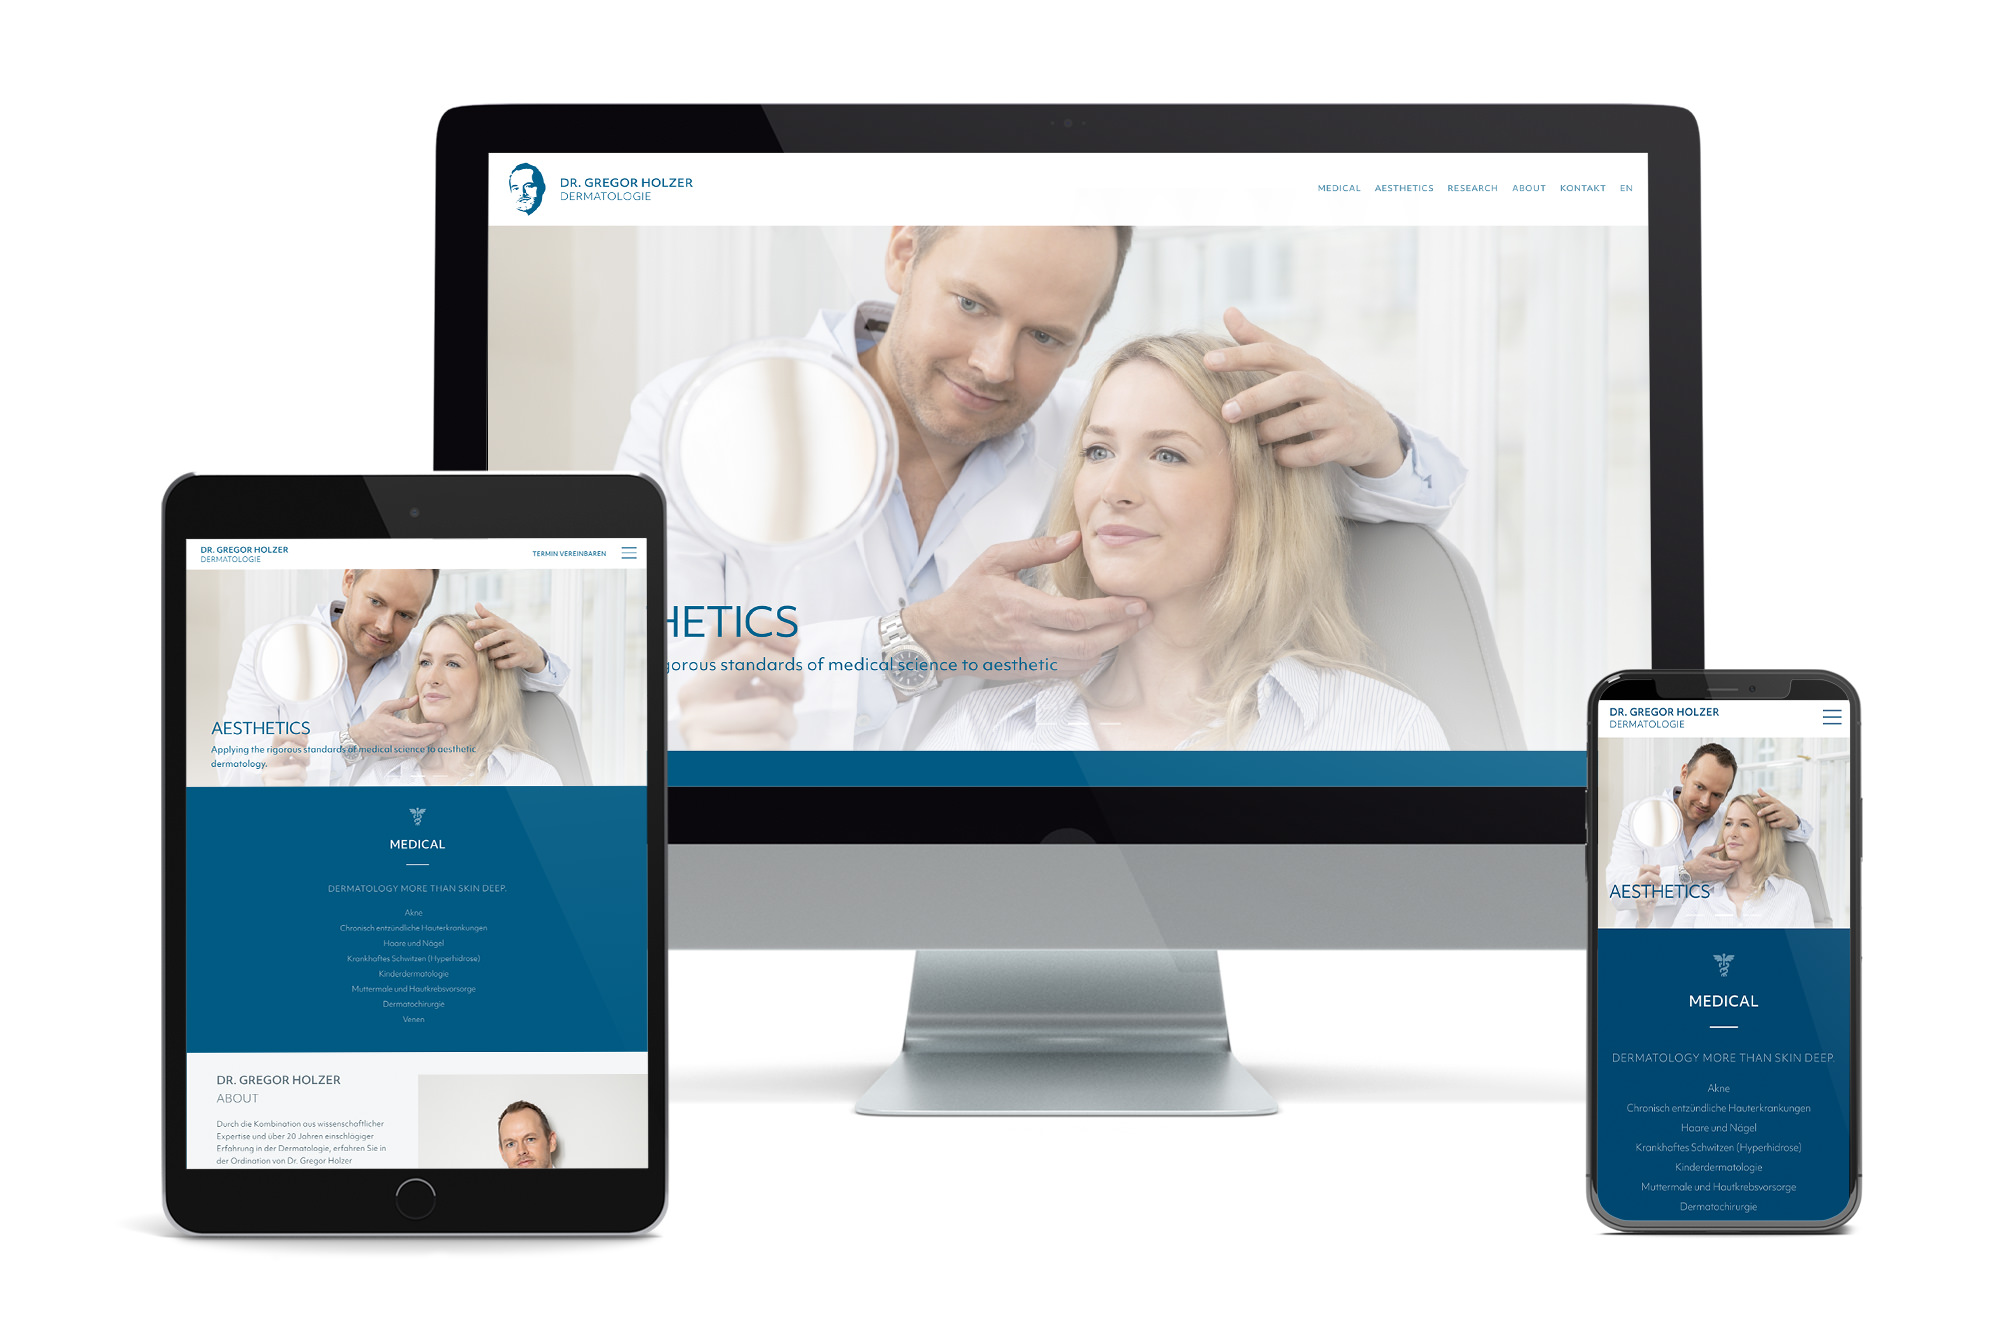 Webdesign Beispiel: Neue Website für Facharzt / Wahlarzt